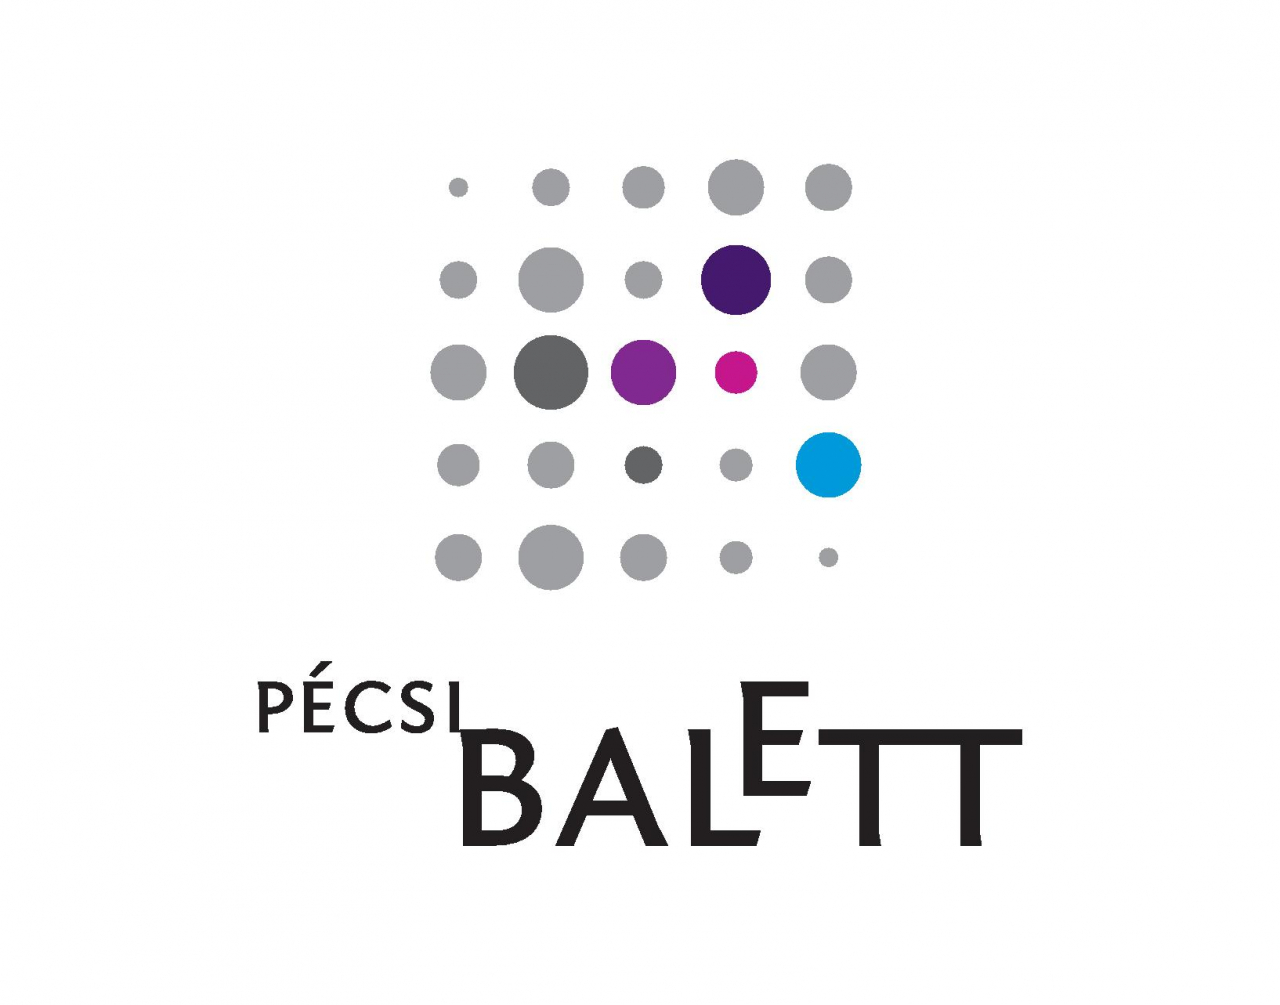 Új bemutatókat, jubileumi programokat tervez a hatvanéves Pécsi Balett